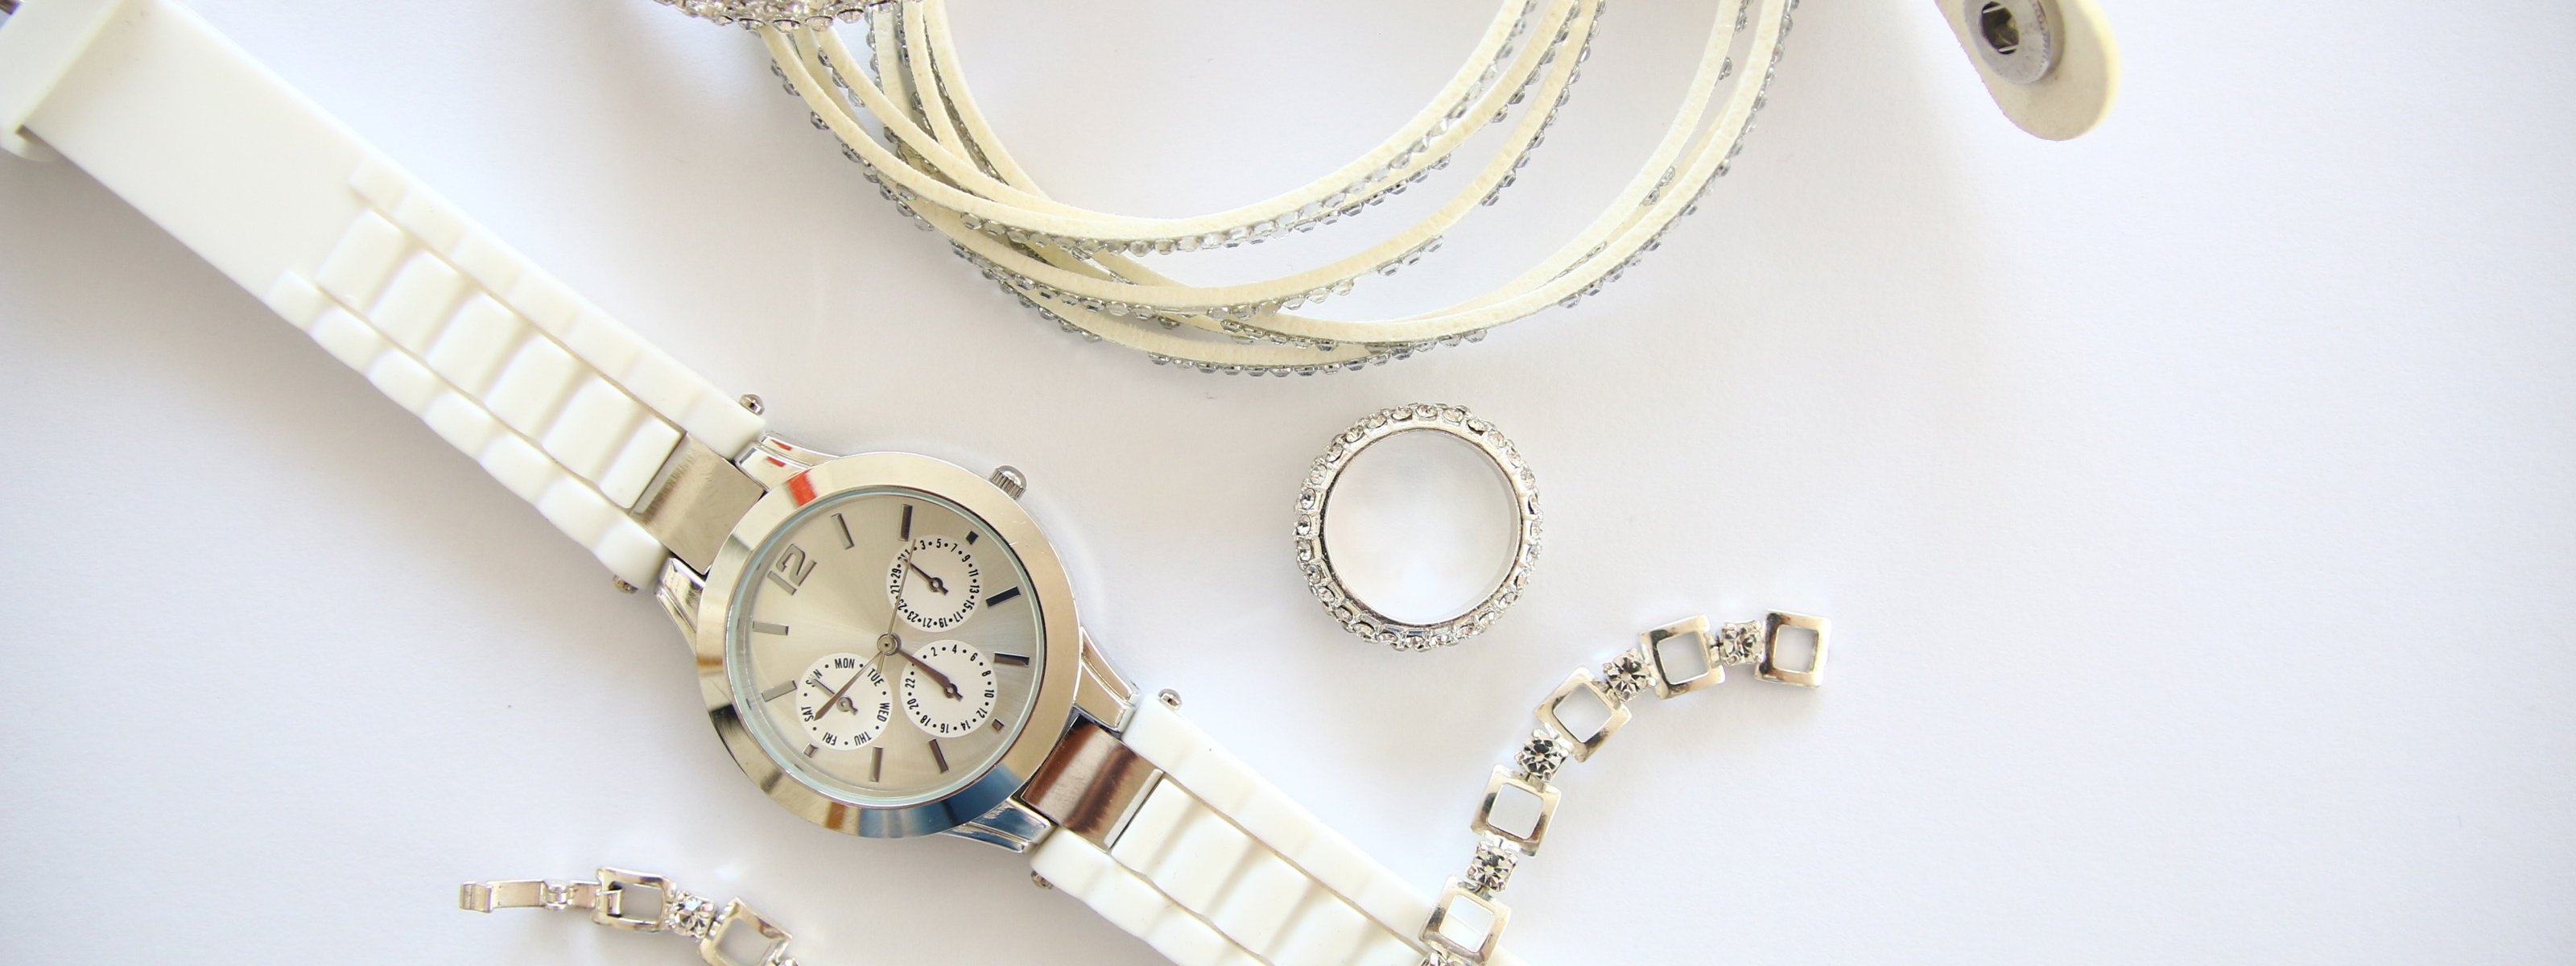 Juwelenarmband über Armbanduhr platziert, ringsum Ring und weitere Schmuckarmbänder